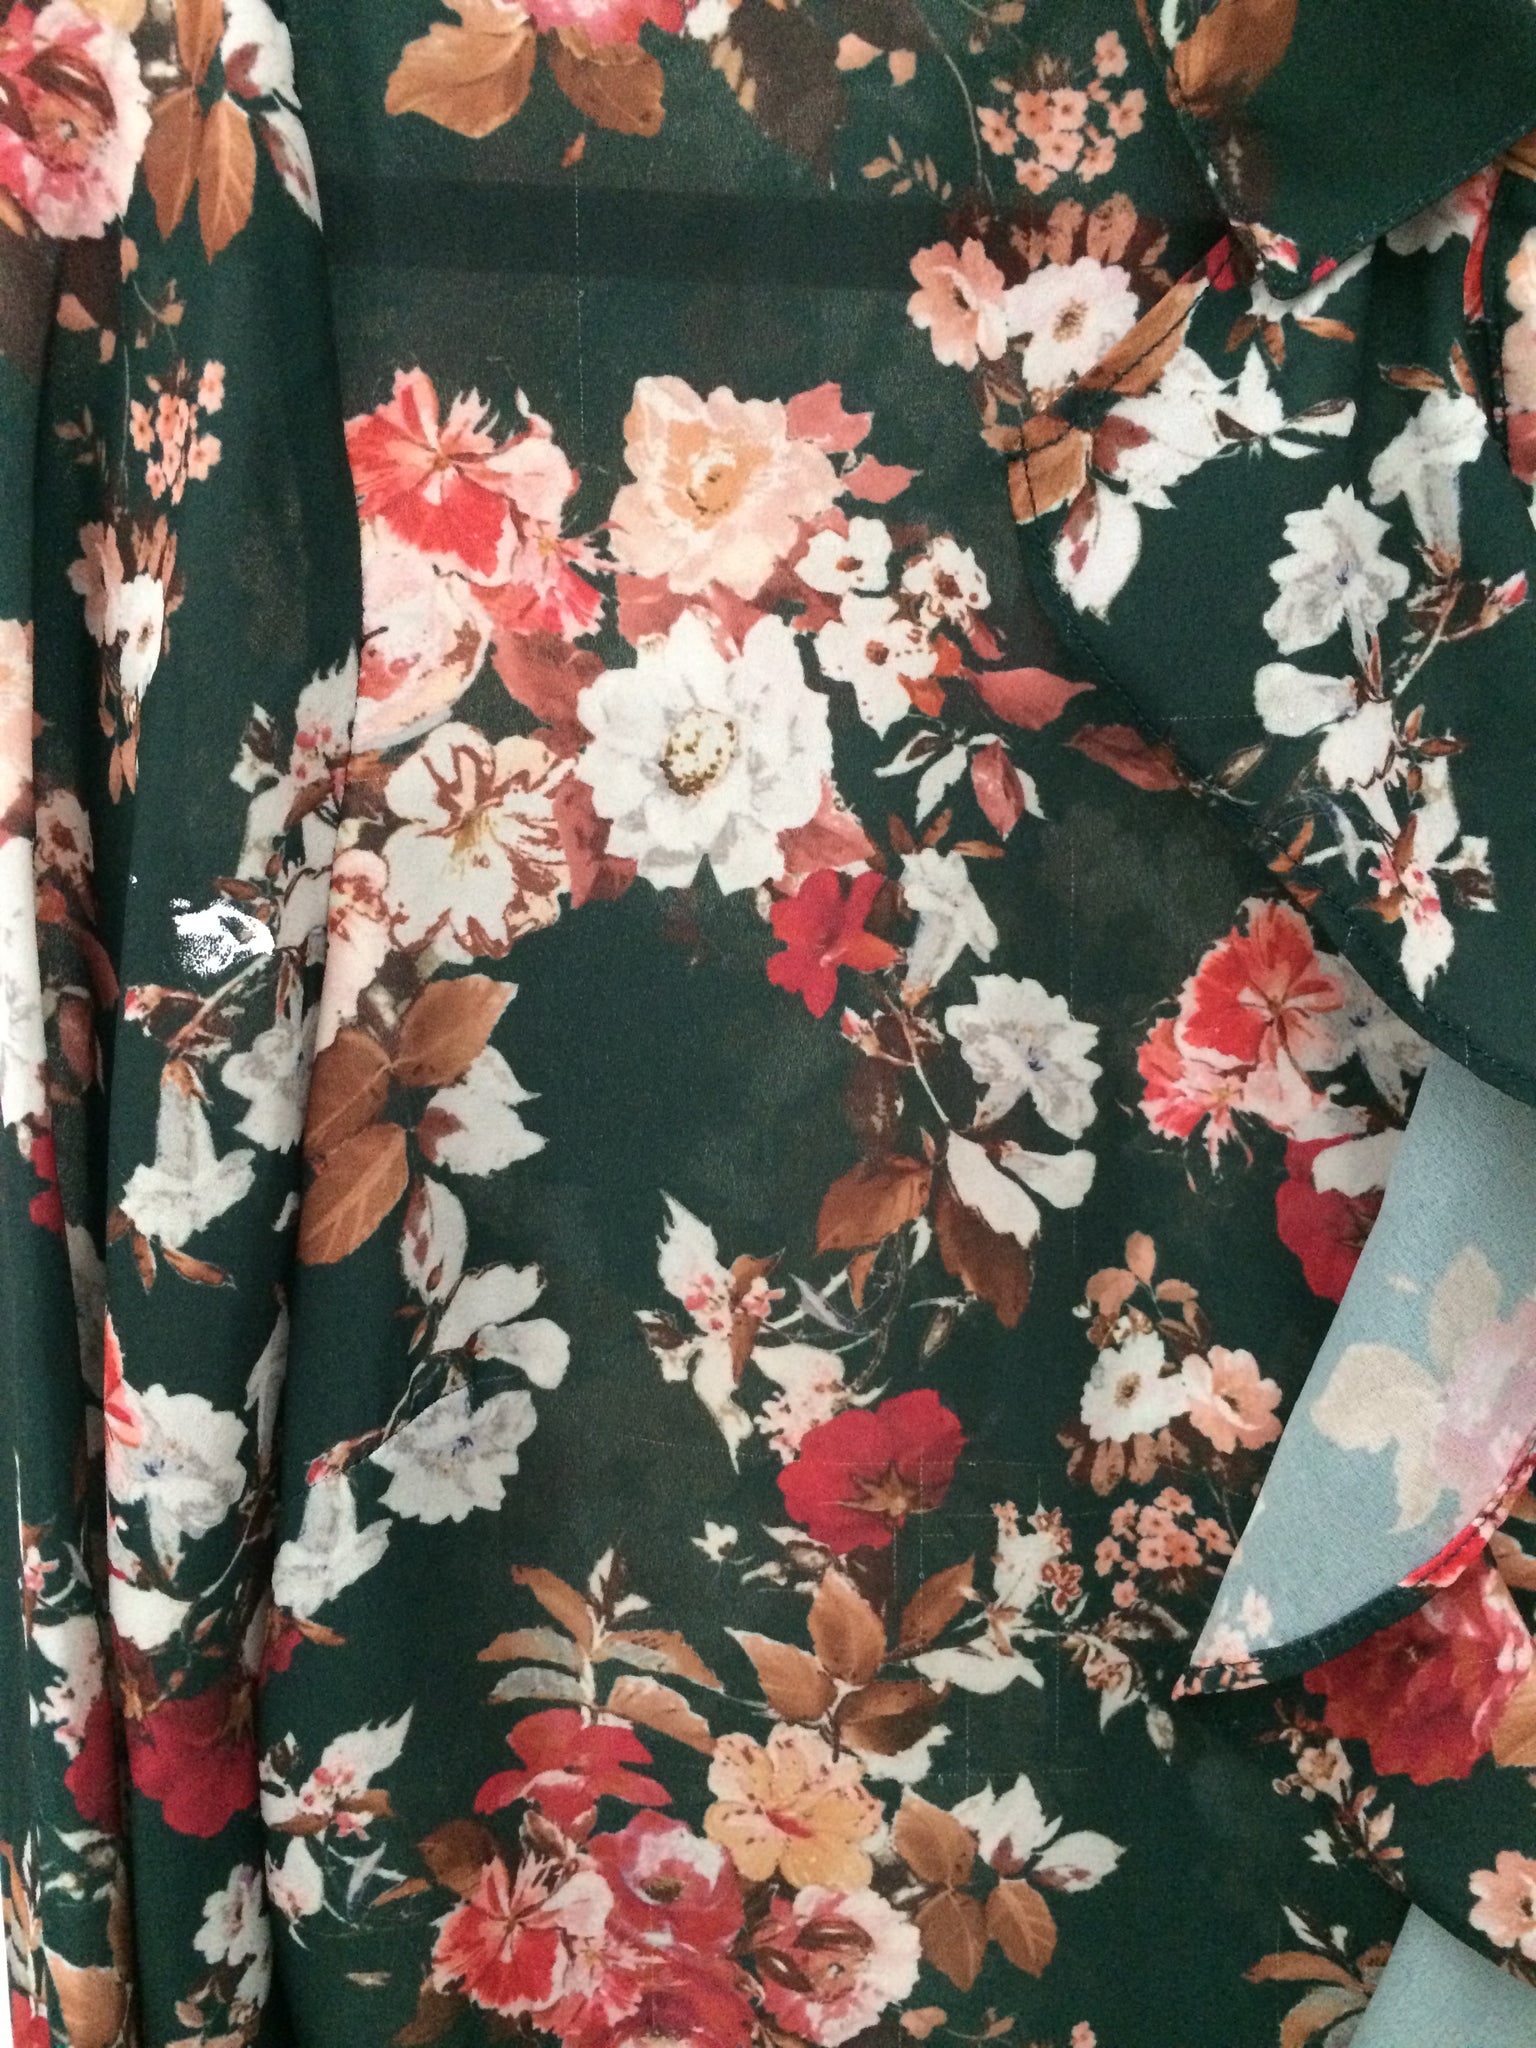 Camisa flores con bolero - Pre-Loved